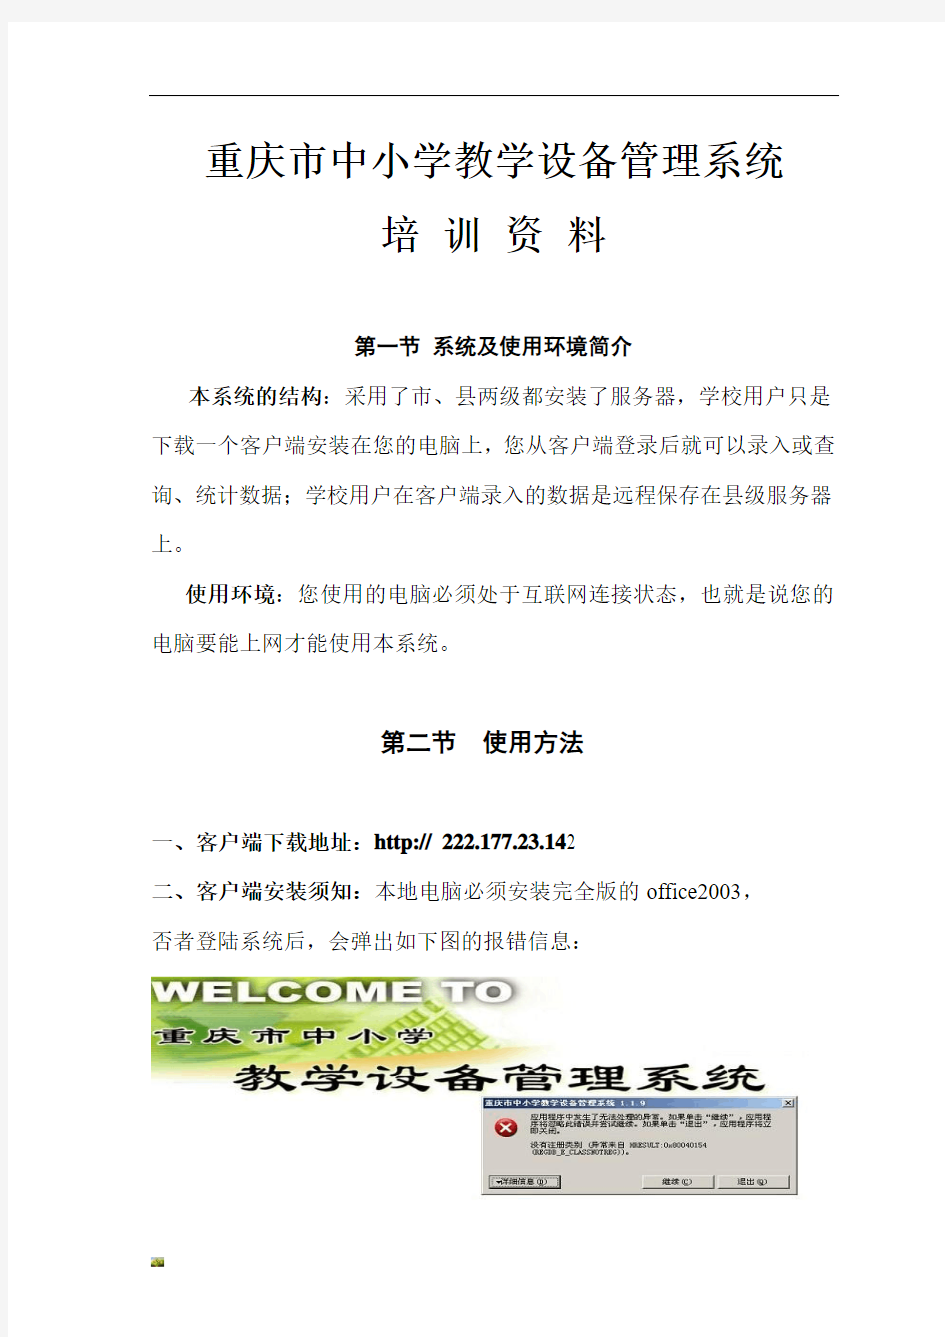 新版重庆市中小学教学设备管理系统培训文件.doc